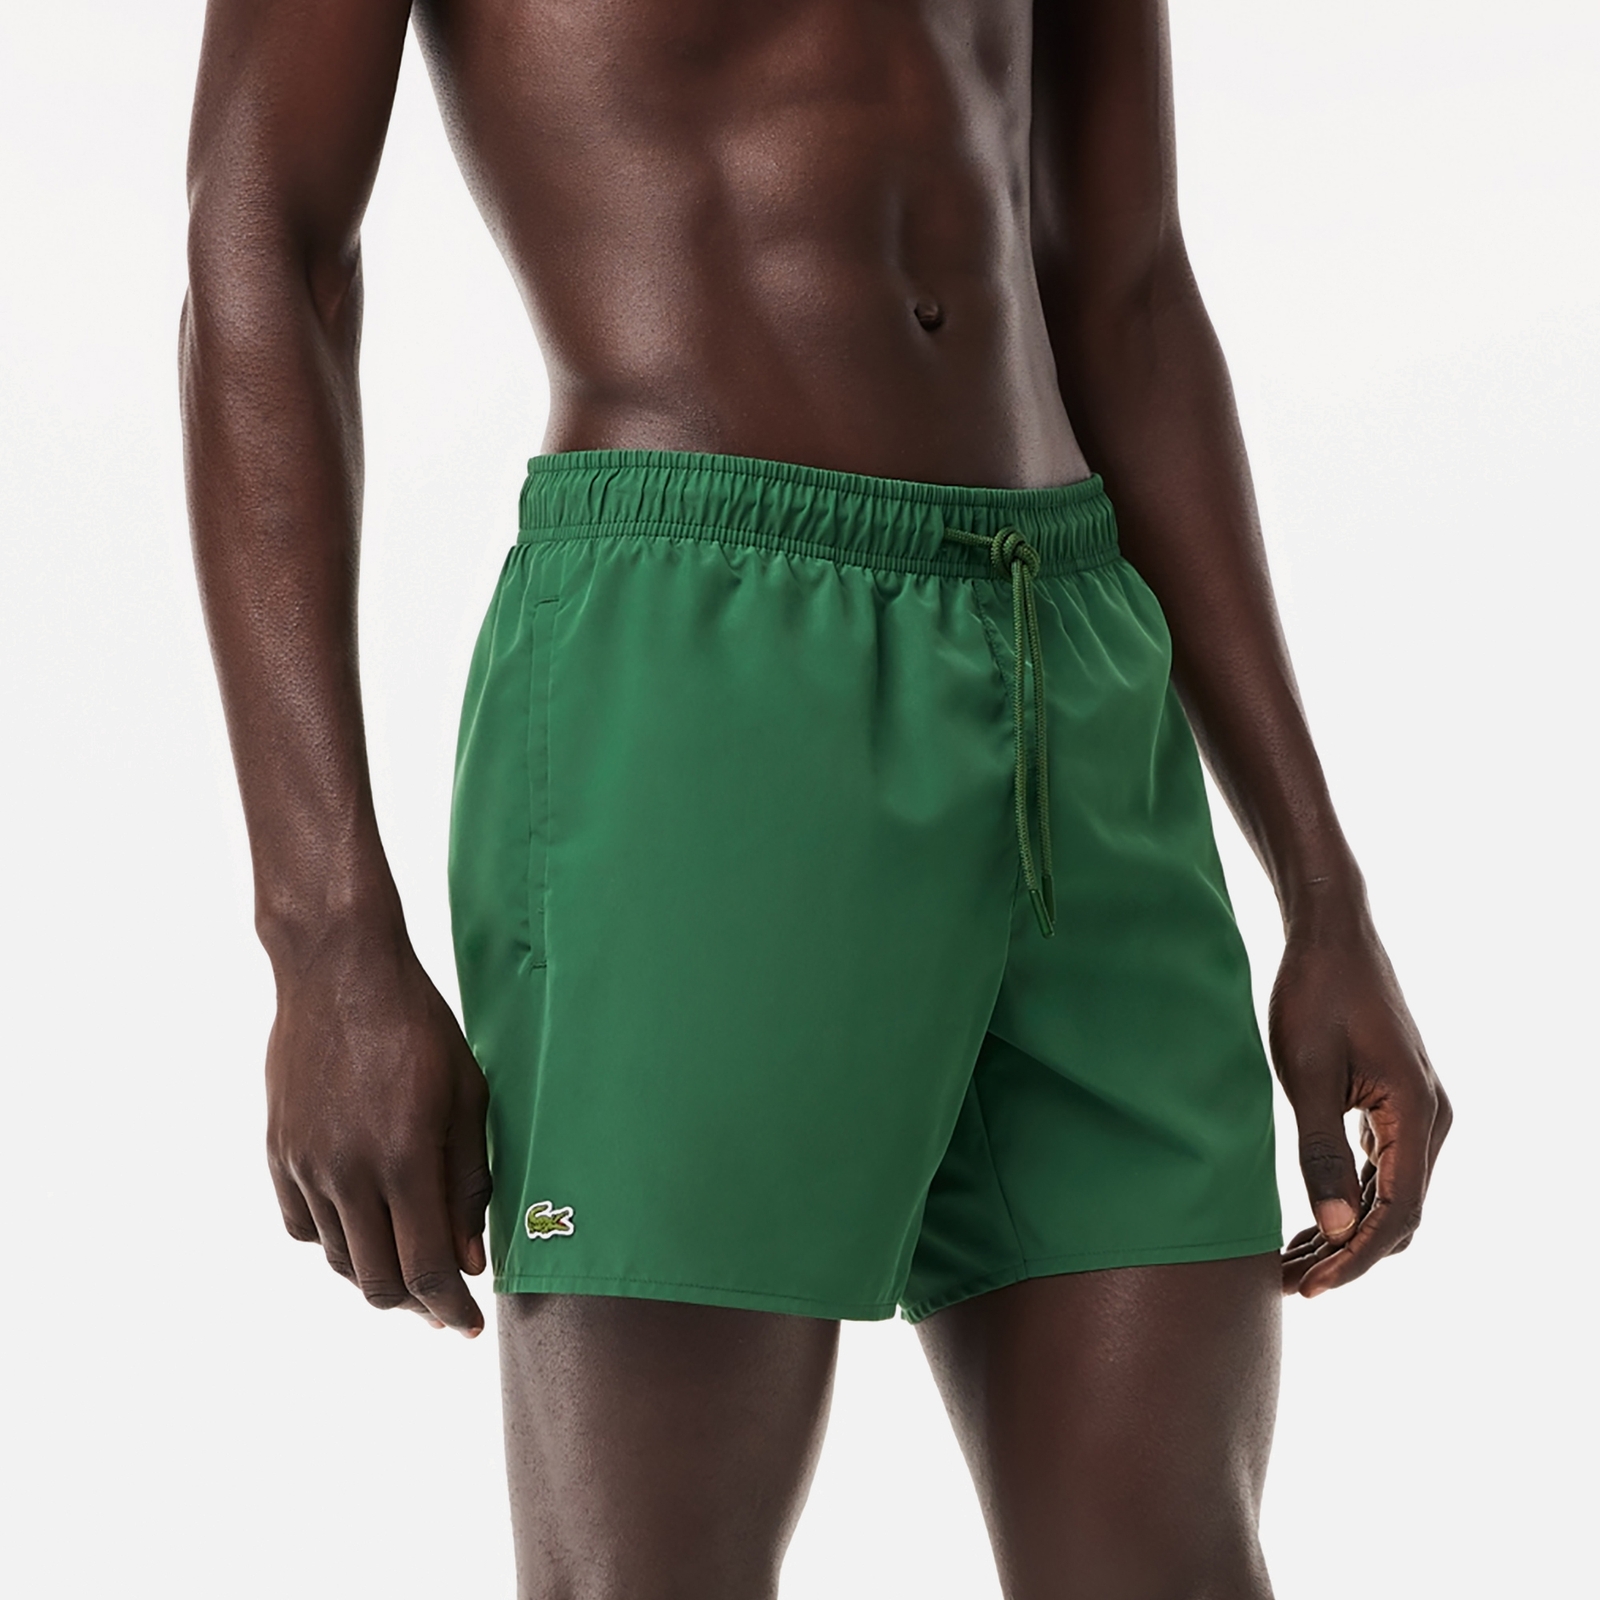 Lacoste Men's Swimming Trunks - Green/Green